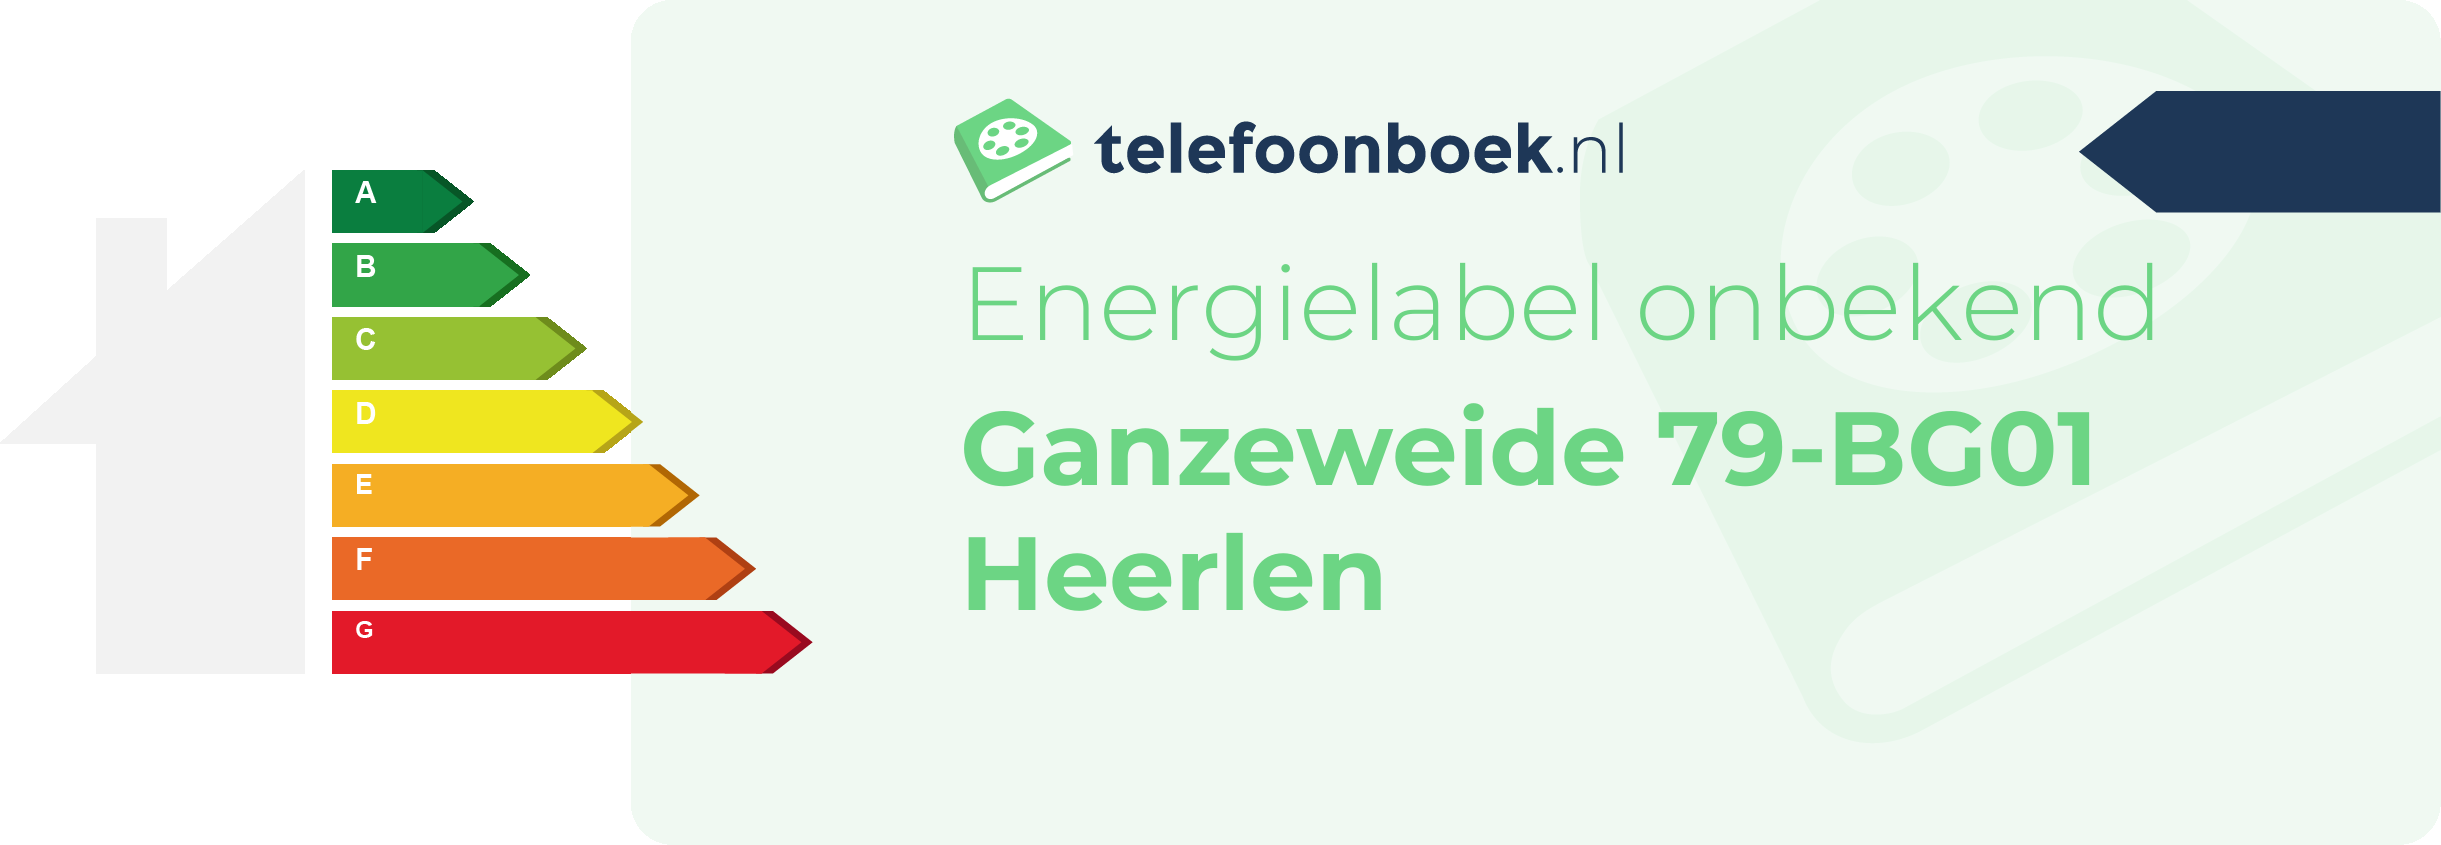 Energielabel Ganzeweide 79-BG01 Heerlen